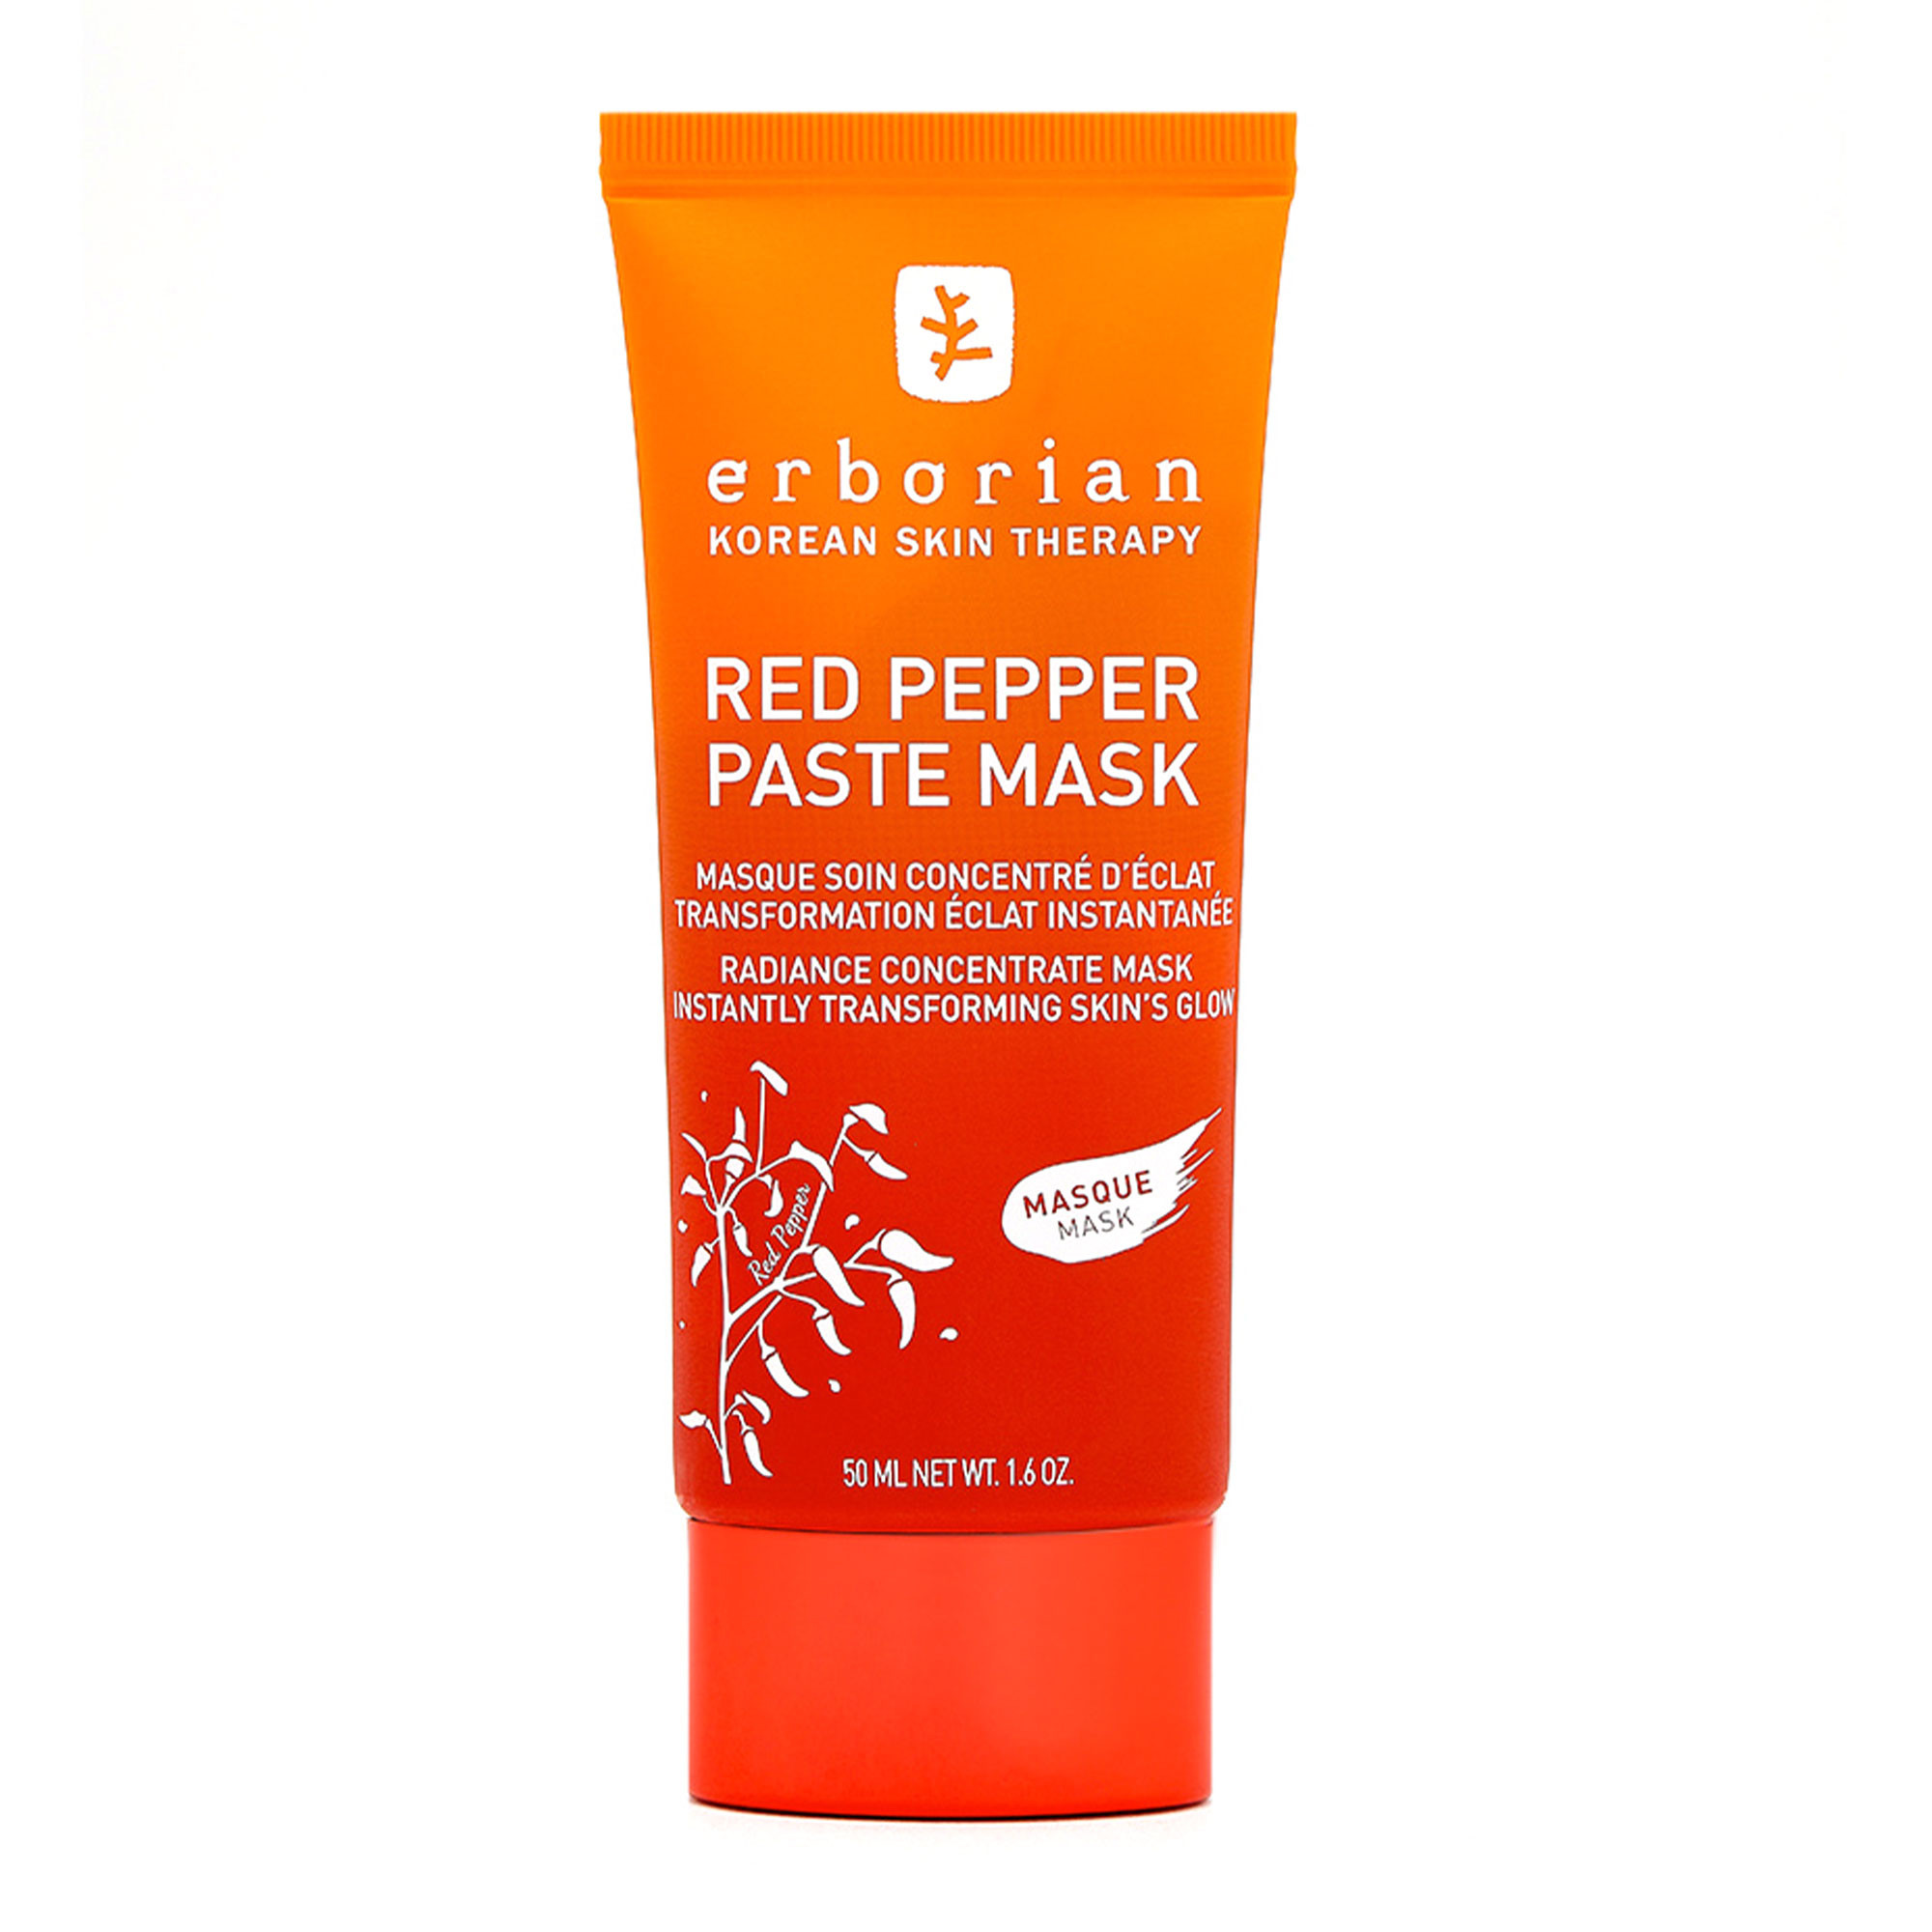 Відгуки про Erborian Red Pepper Paste Mask Паста-маска для лица с красным перцем